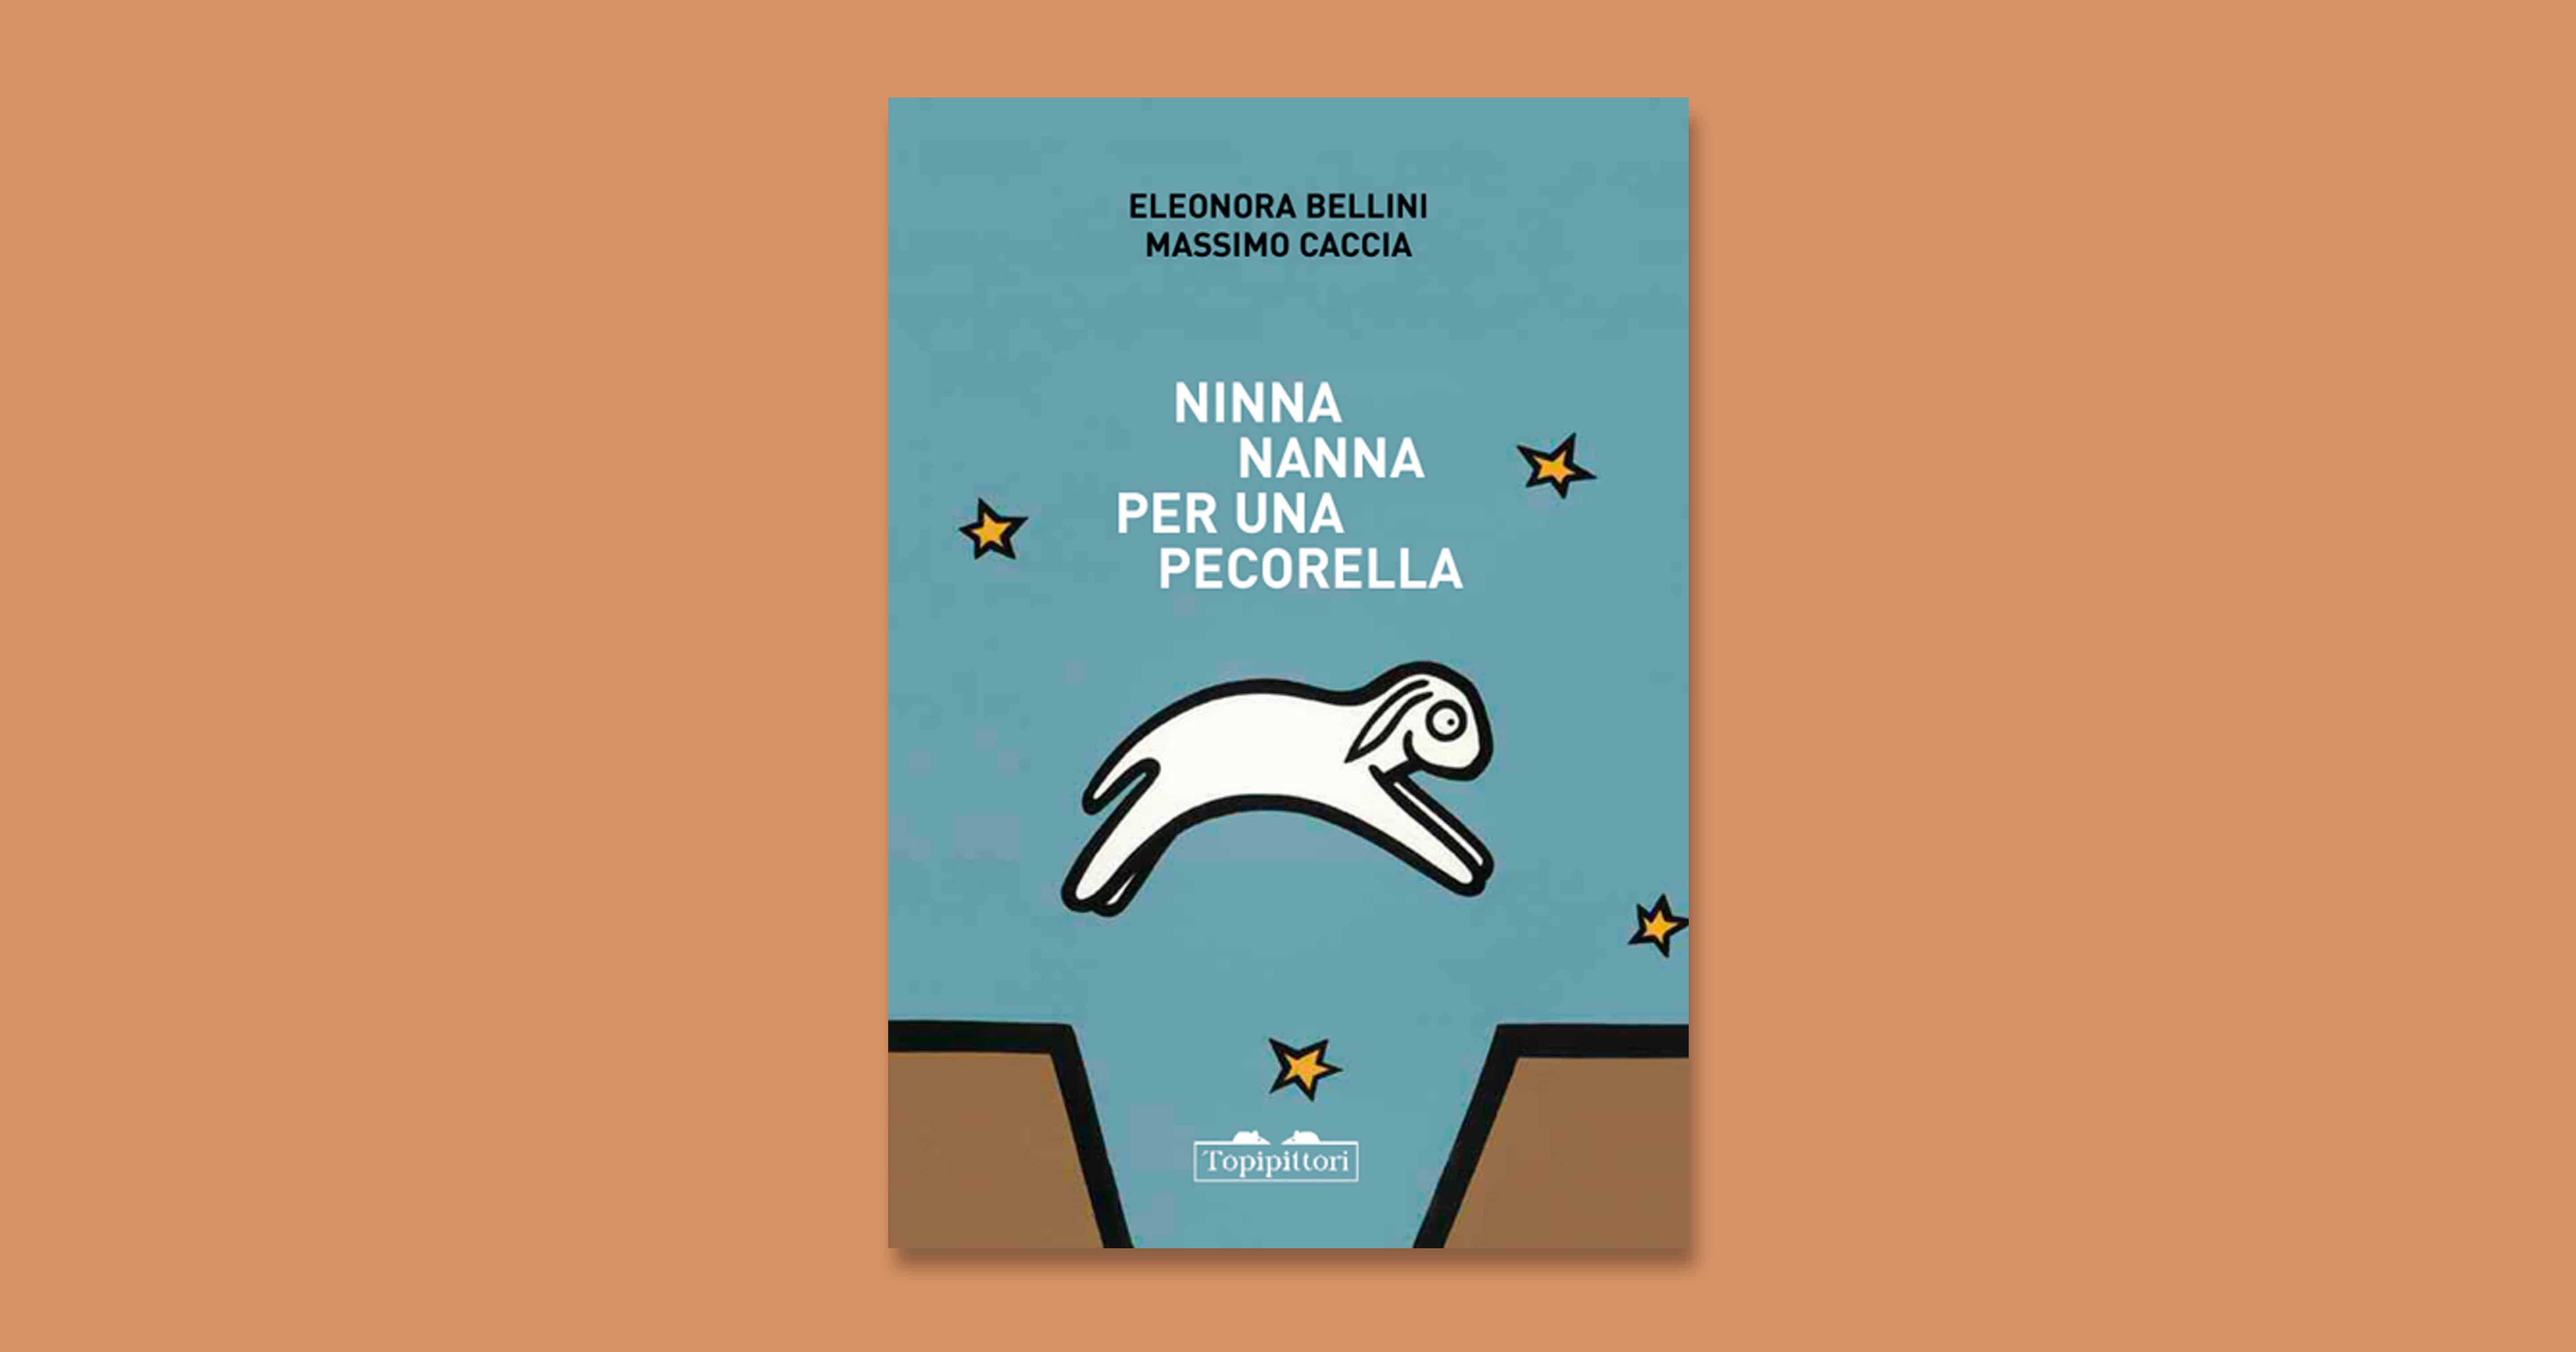 https://www.uppa.it/wp-content/uploads/2013/06/Ninna-nanna-per-una-pecorella.jpg